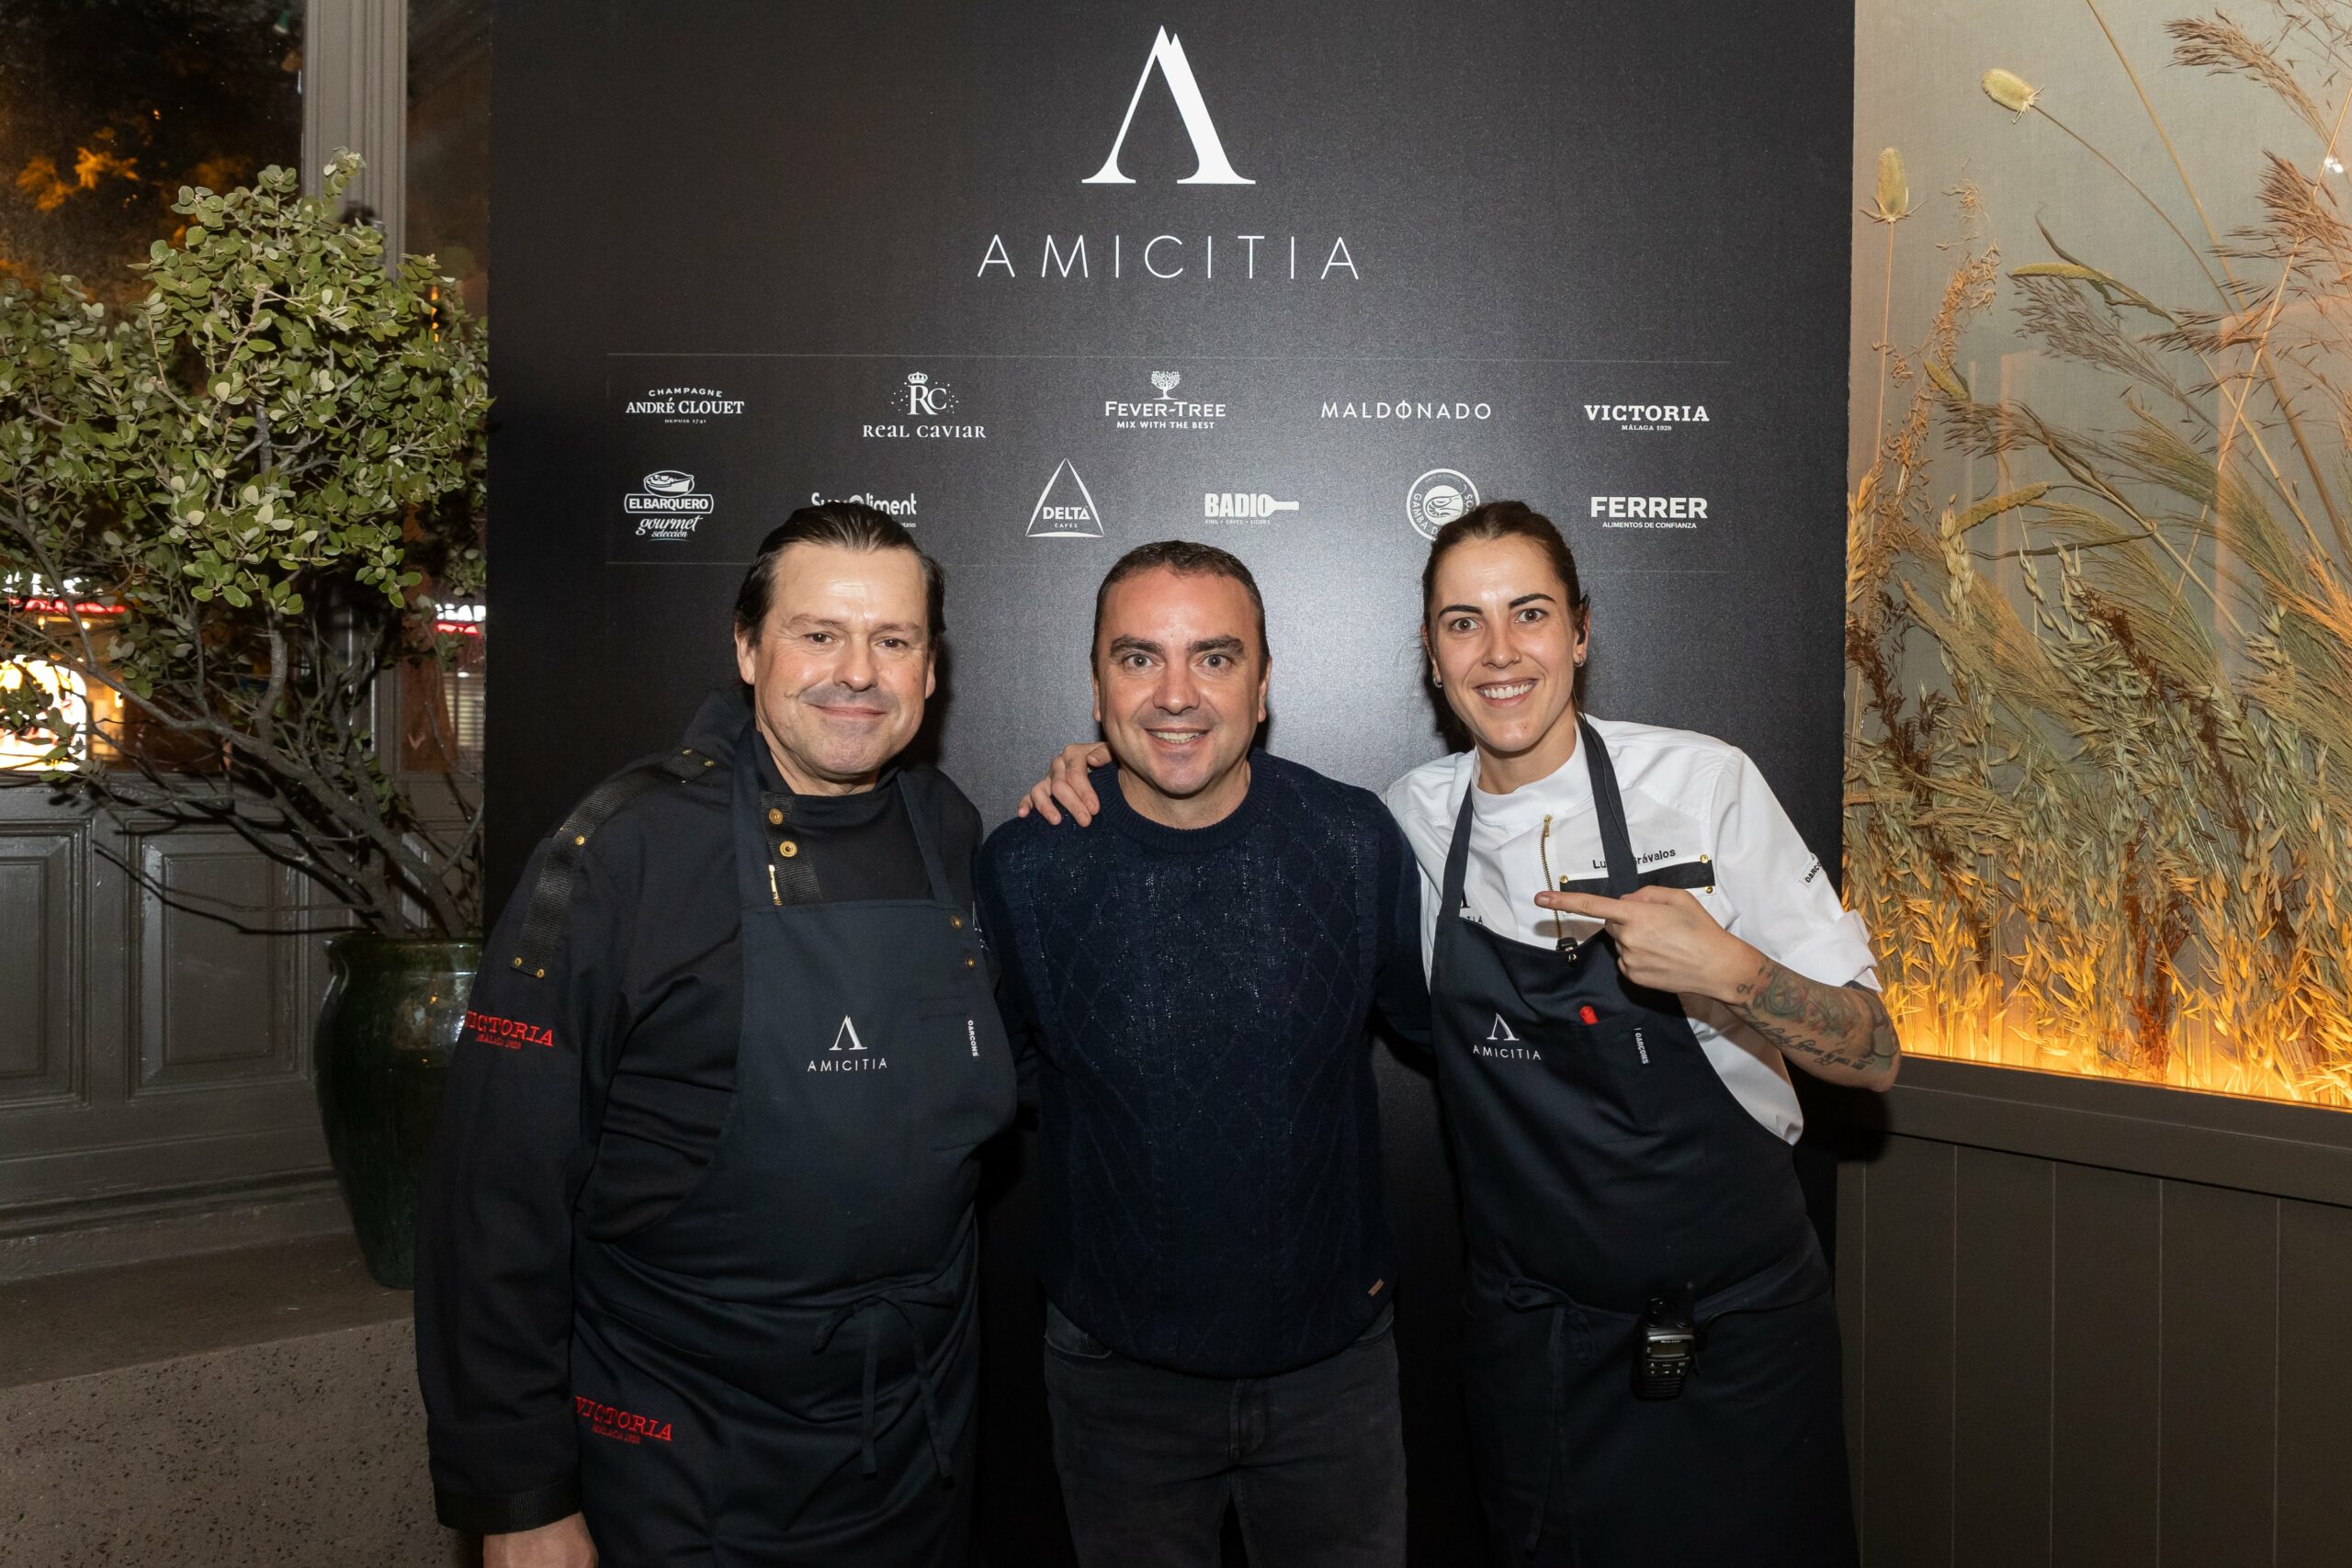 Albert Jubany y Luvía Grávalos, chefs del restaurante Amicitia de Madrid